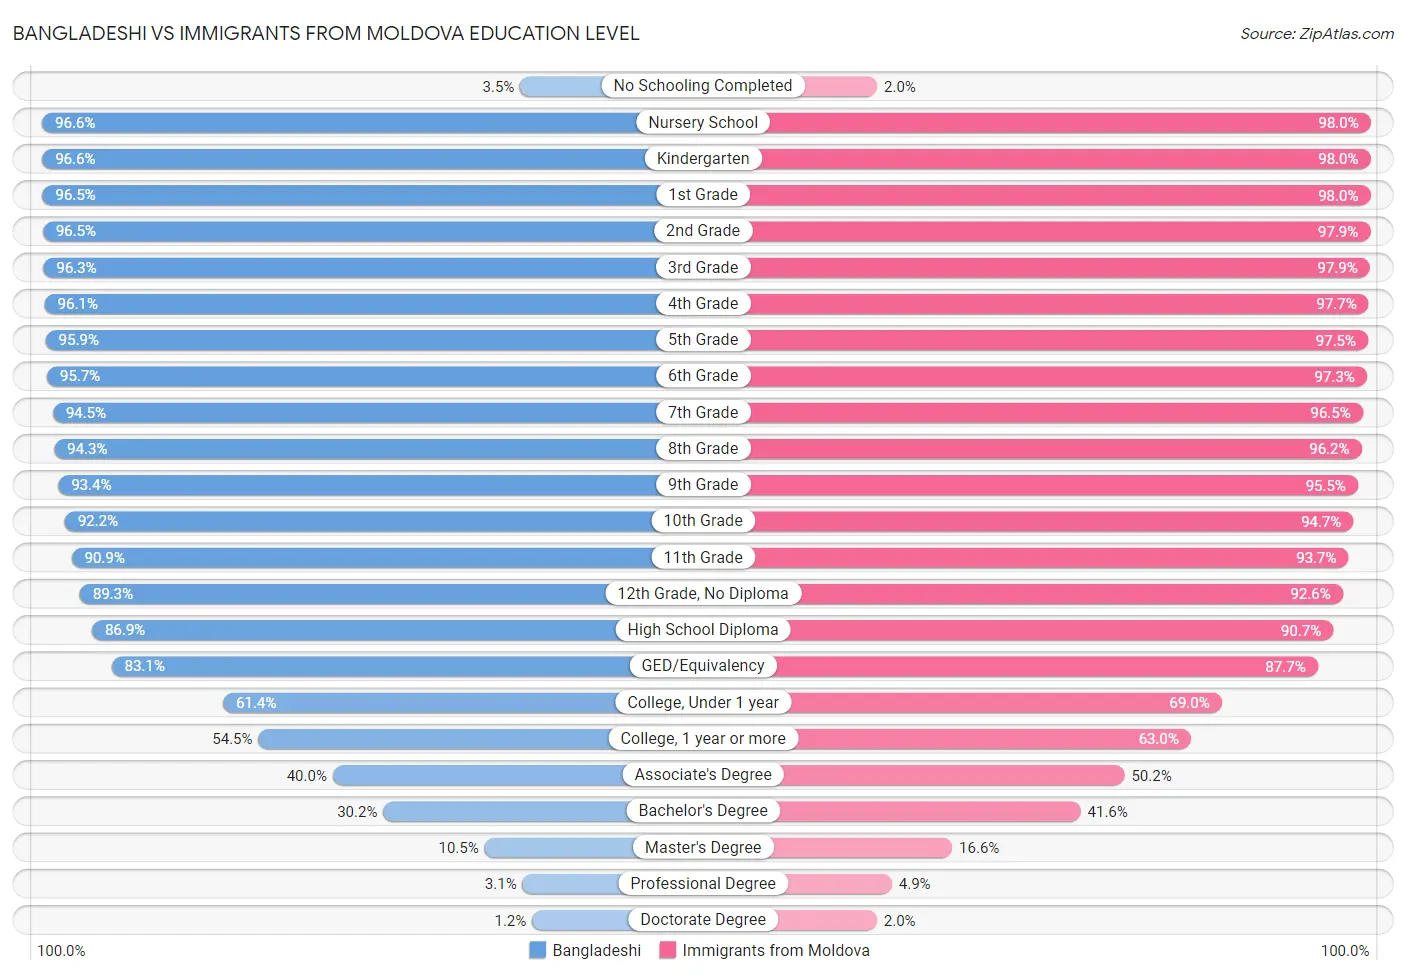 Bangladeshi vs Immigrants from Moldova Education Level